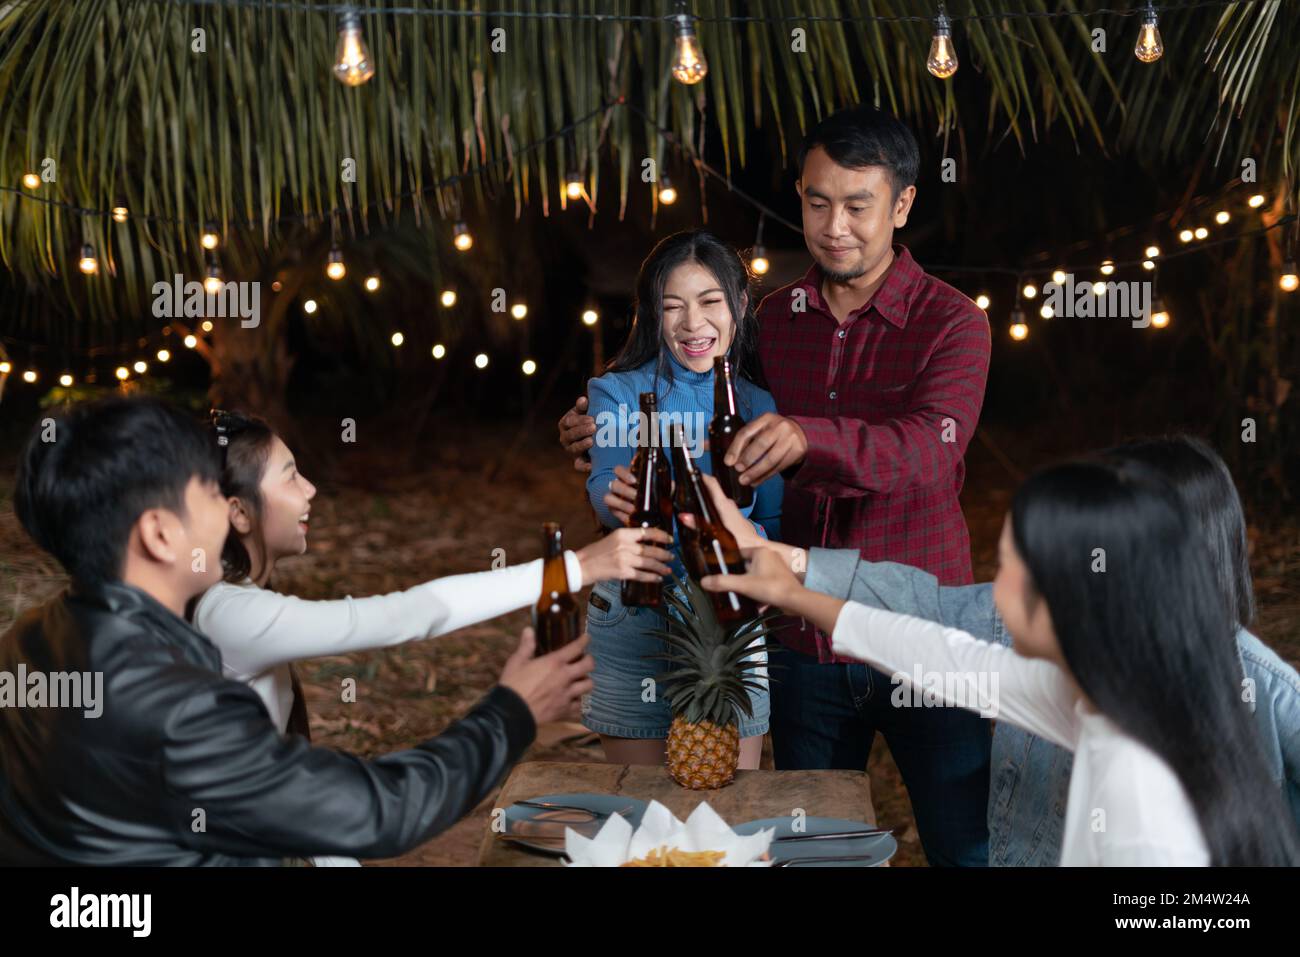 Parejas jóvenes y amigos disfrutan de una fiesta feliz bebiendo cerveza juntos. Foto de stock